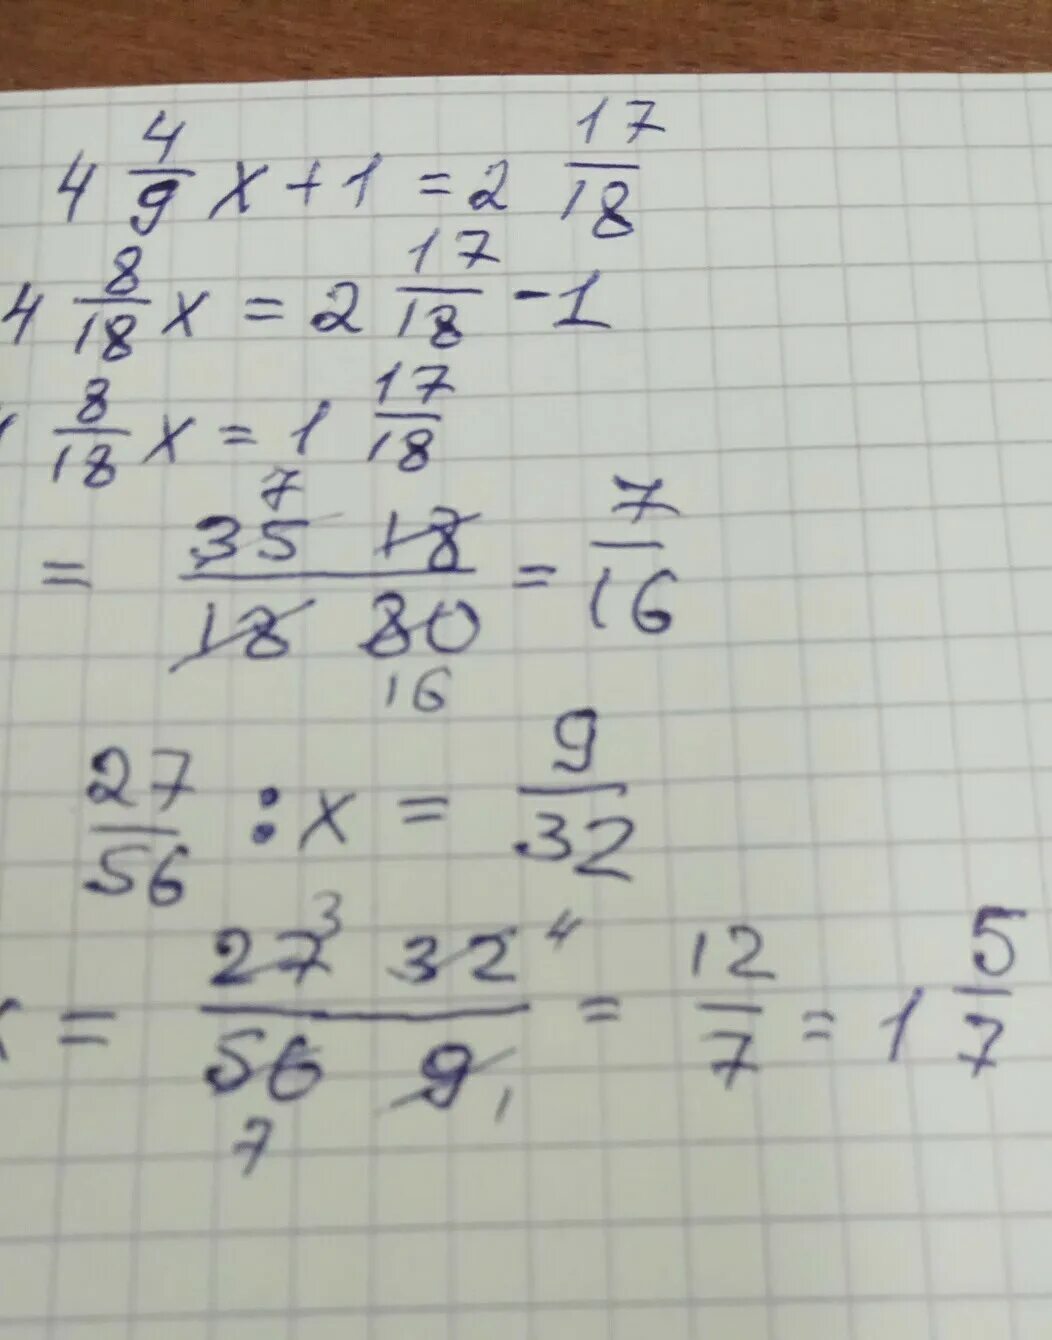 1 17 18 решение. 9x-3,2=17,2. 27-X=9. 2 Умножить на 1/4 дробь. 27 * (X / 8 - 19) = 1215.